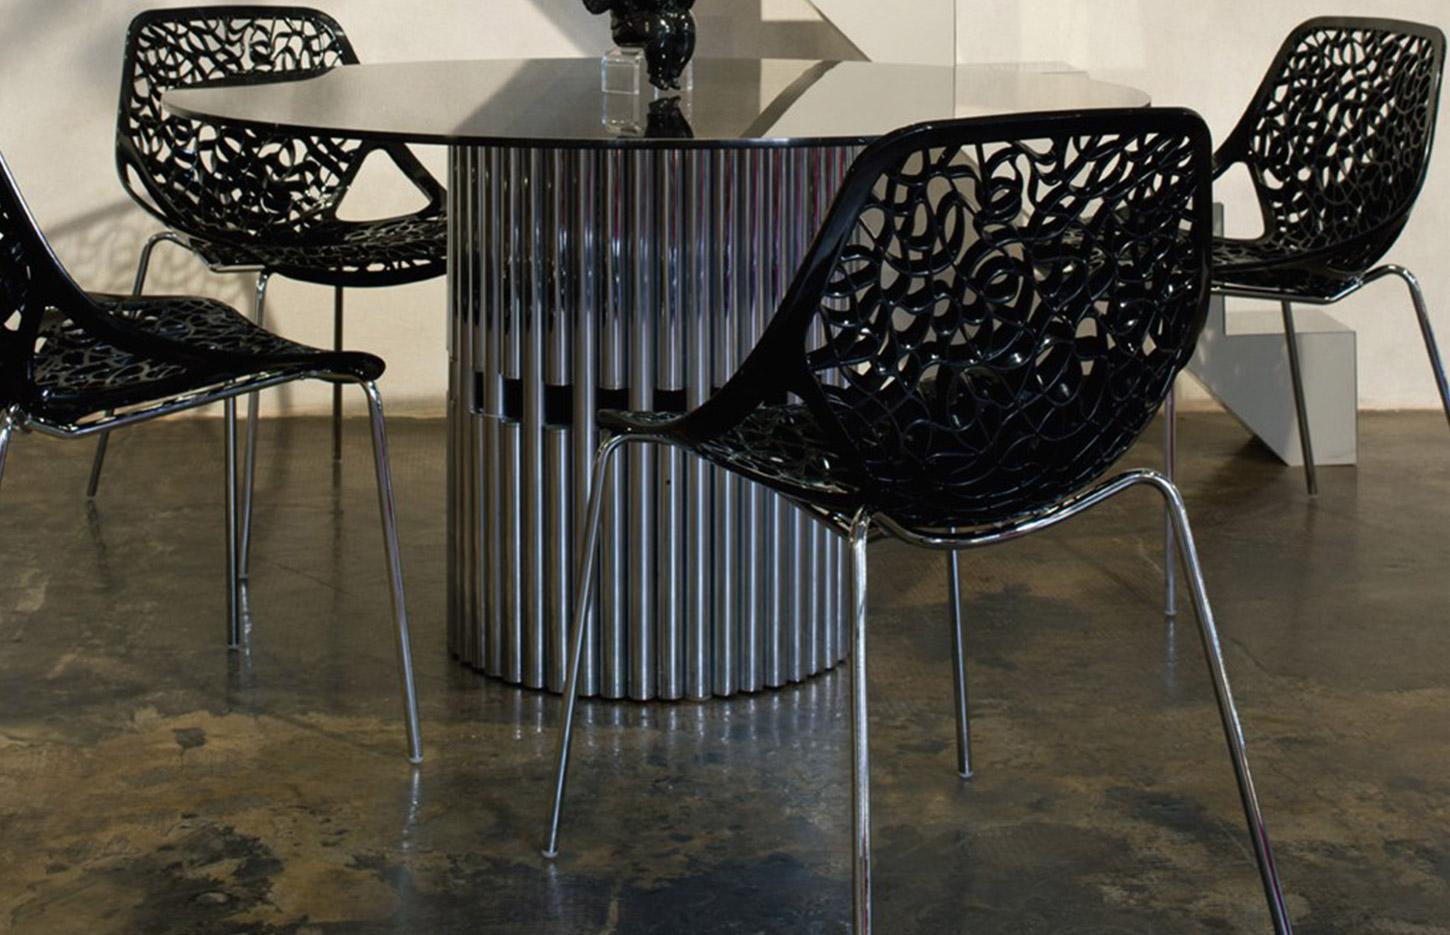 Table et chaise d\'extérieur, coque nylon et pieds en acier chromé, gamme Arlanza - France Bureau